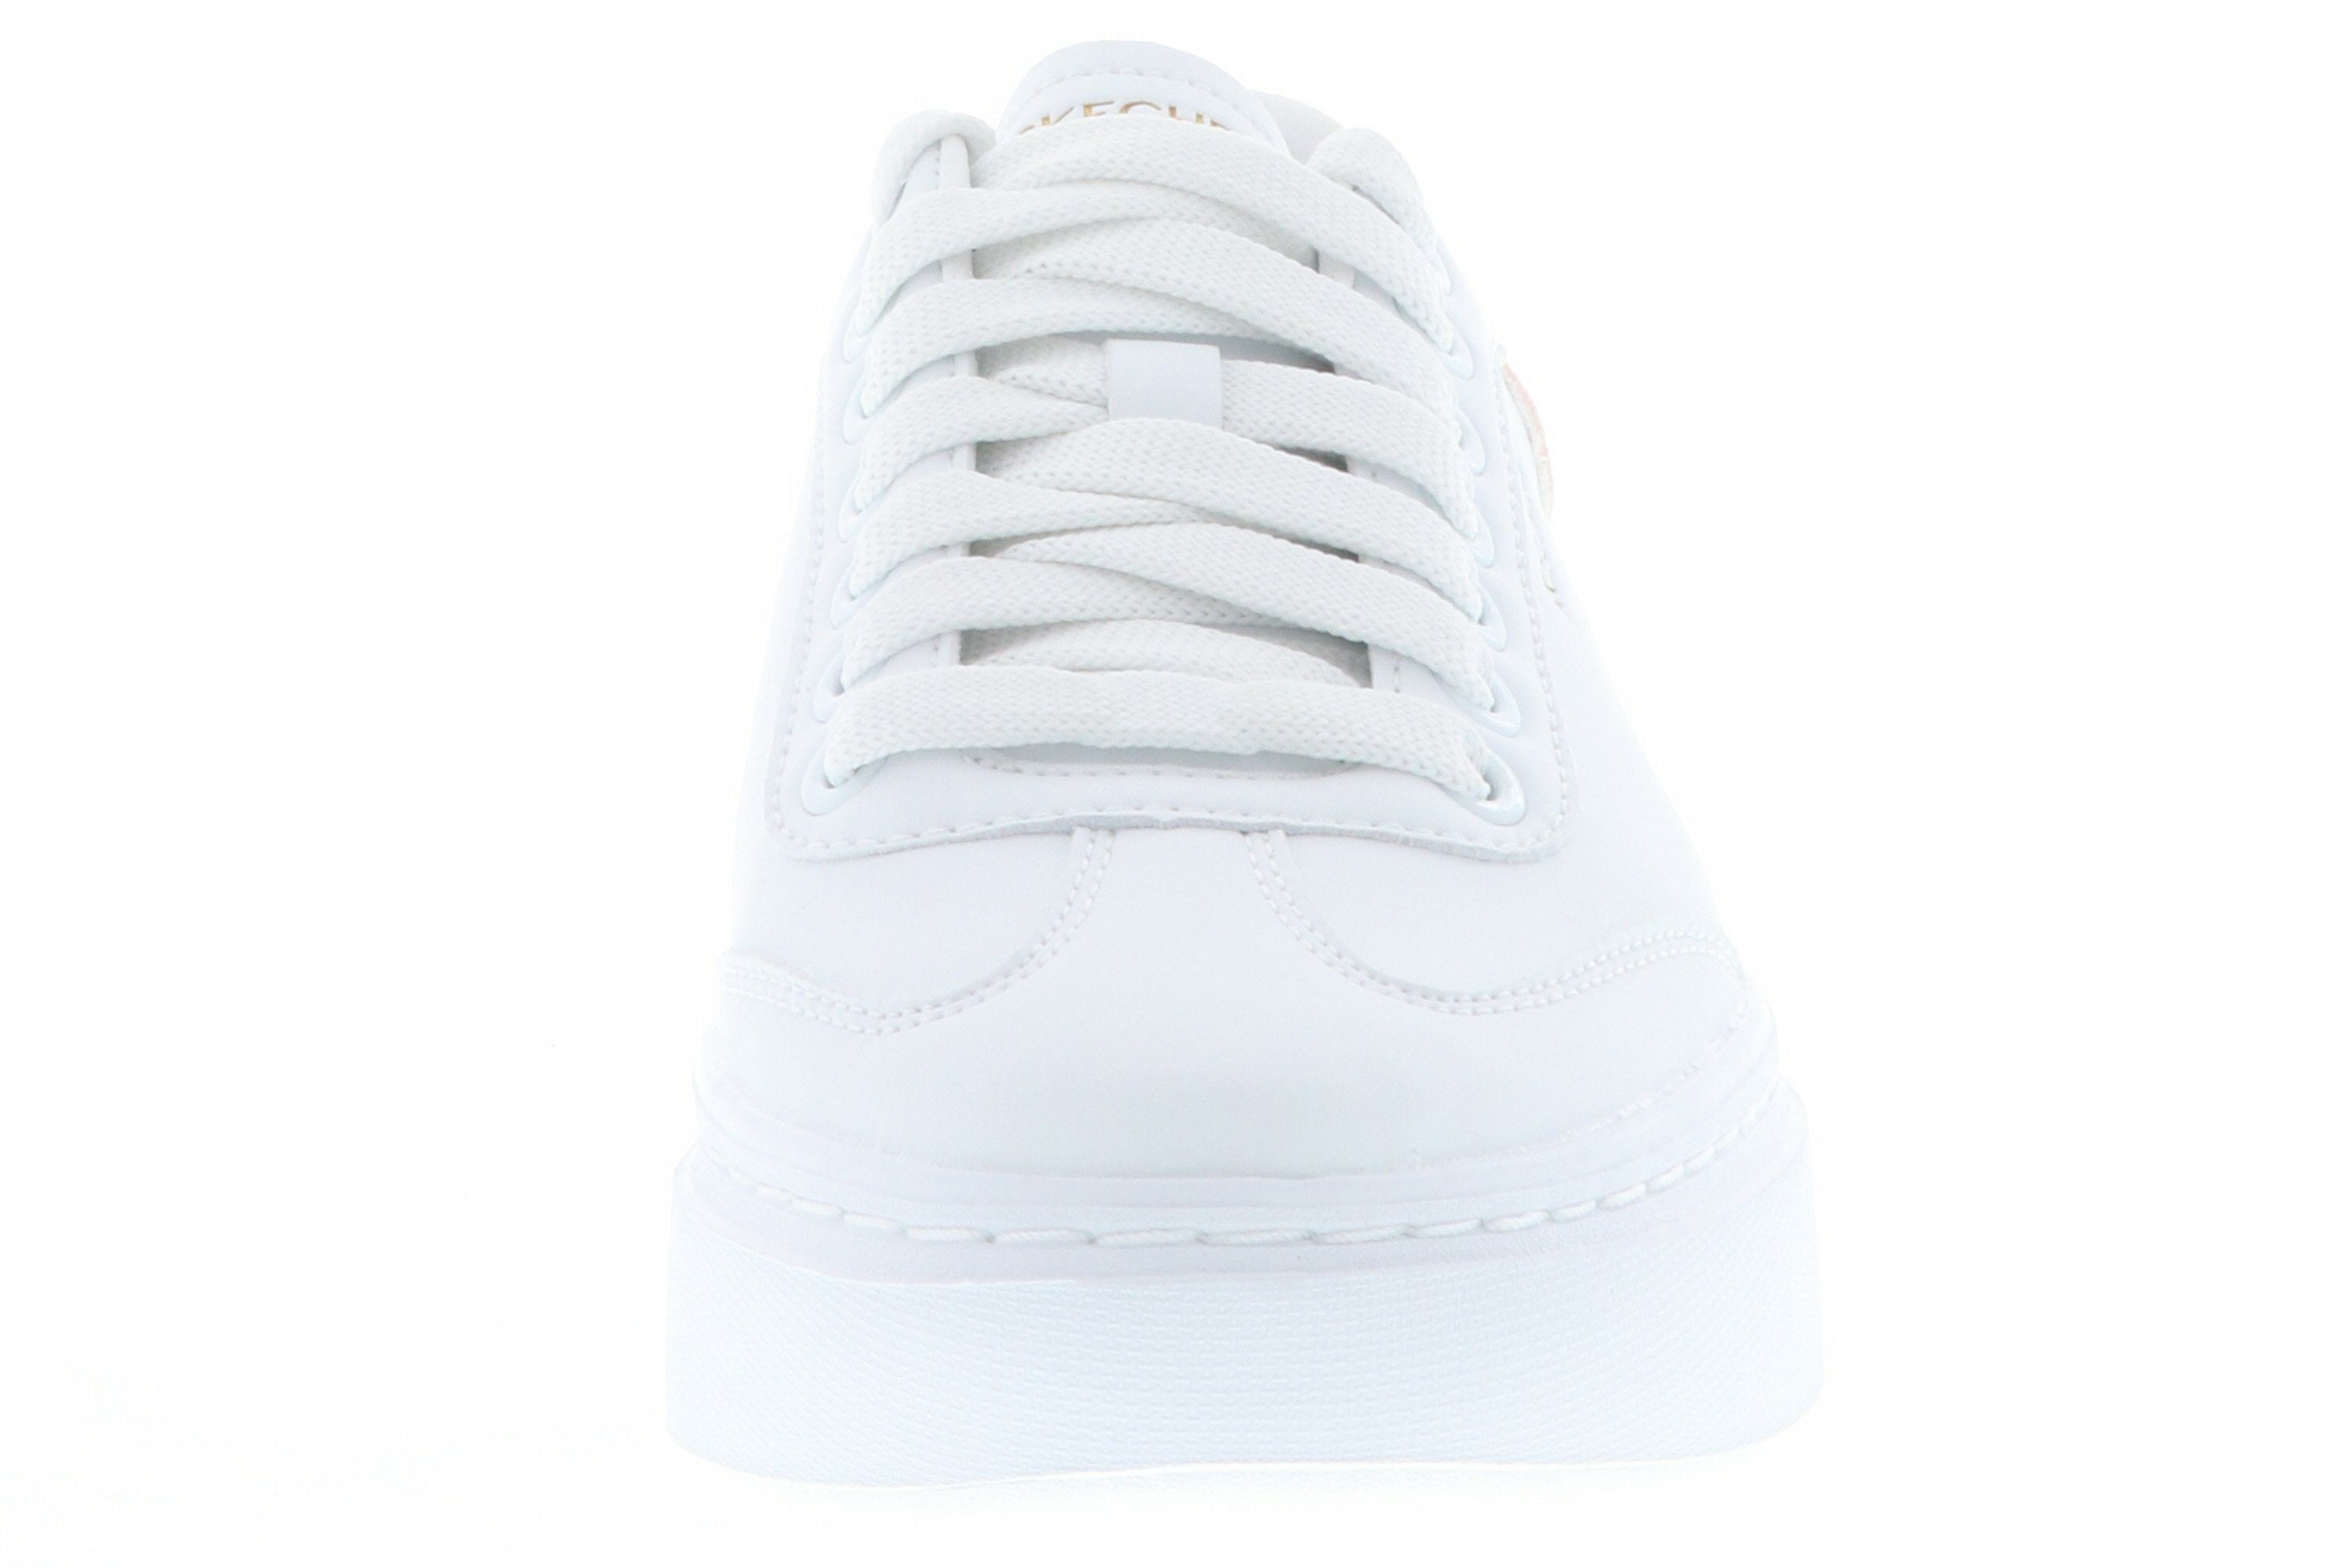 White/Pink aus Behavior Sohle (20203205) 185060/WPK Sneaker Cordova Gummi rutschhemmende Classic-Best white/pink Skechers